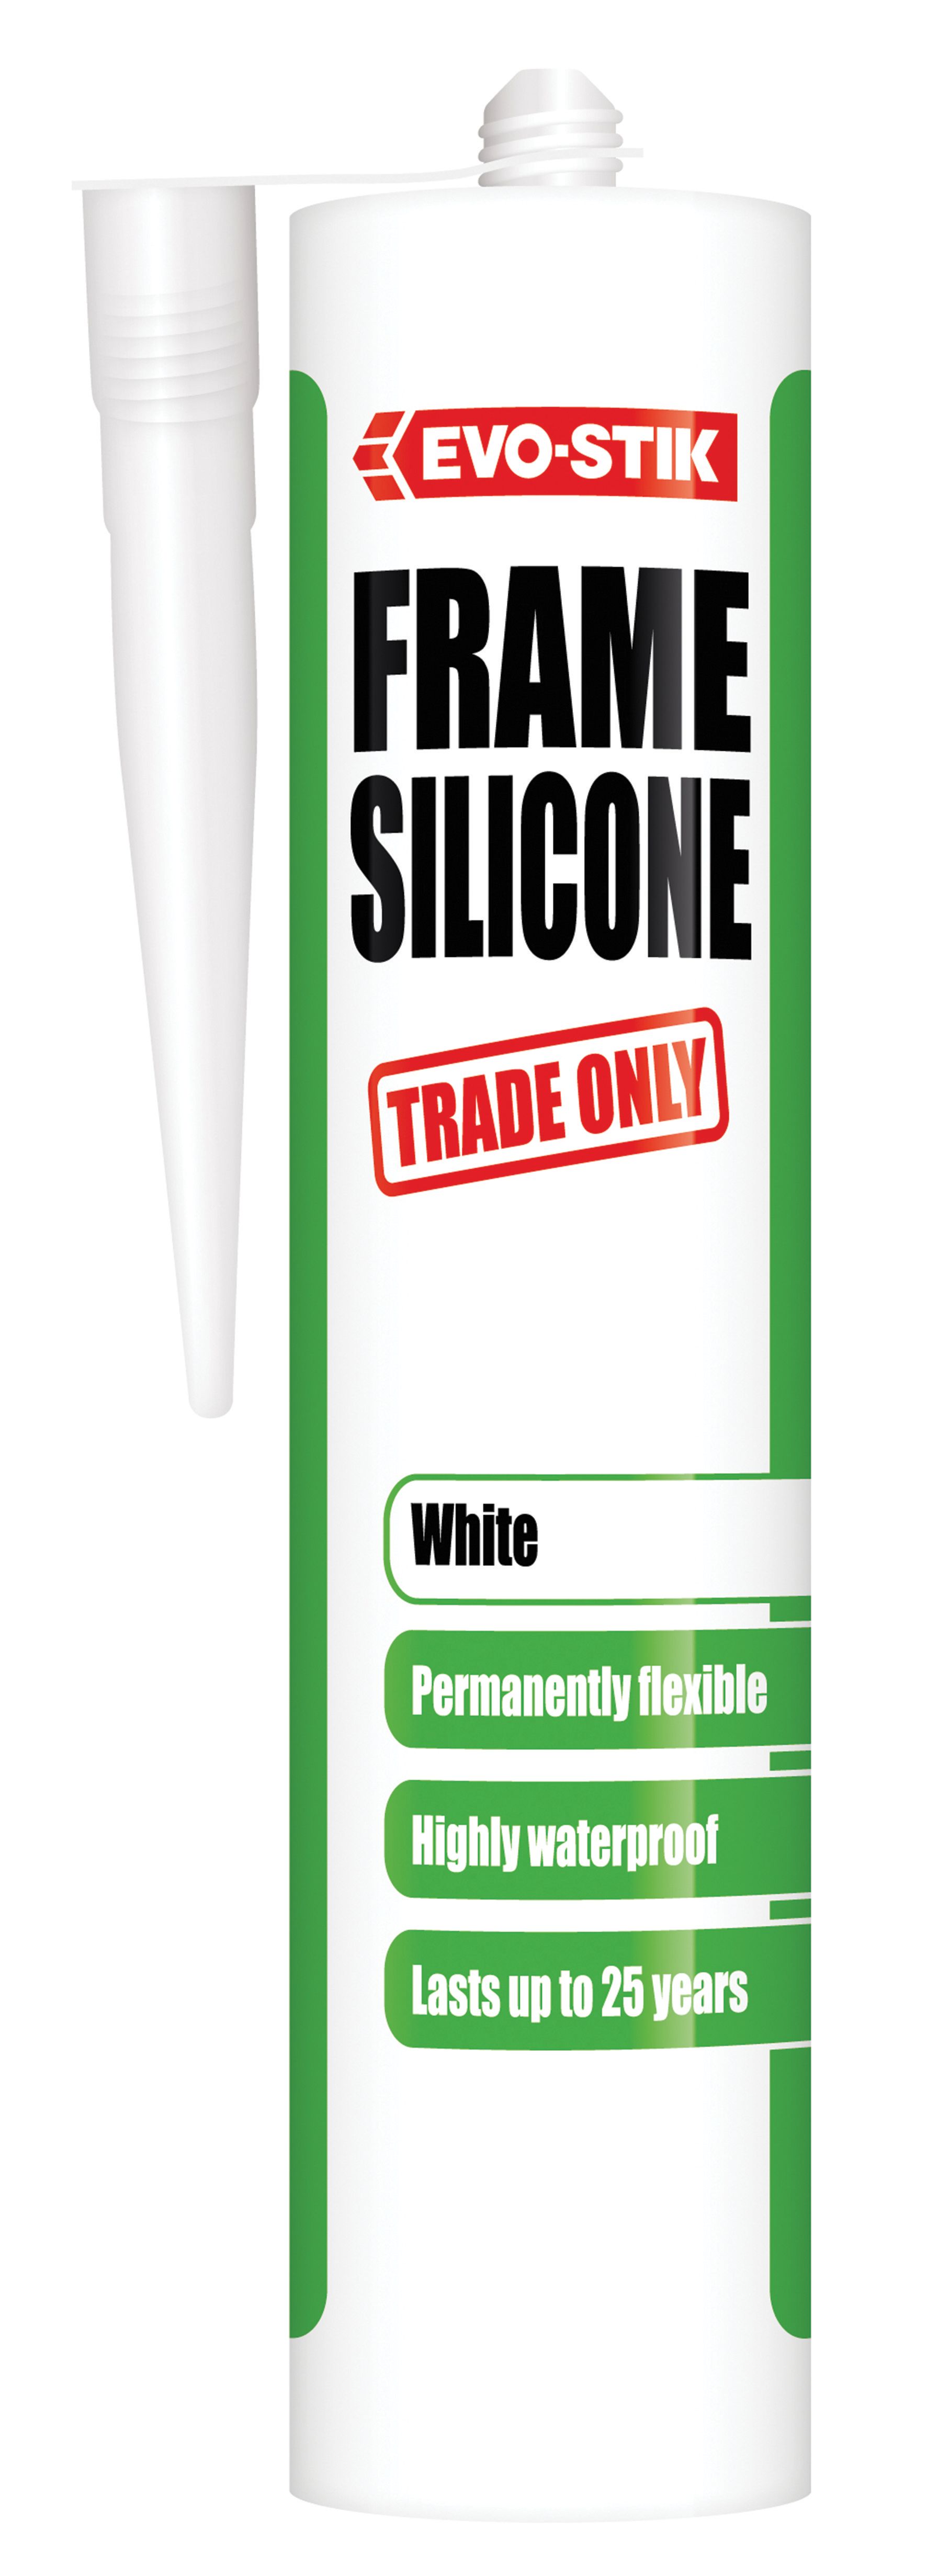 Evo-Stik Trade Only Frame White Silicone - 280ml